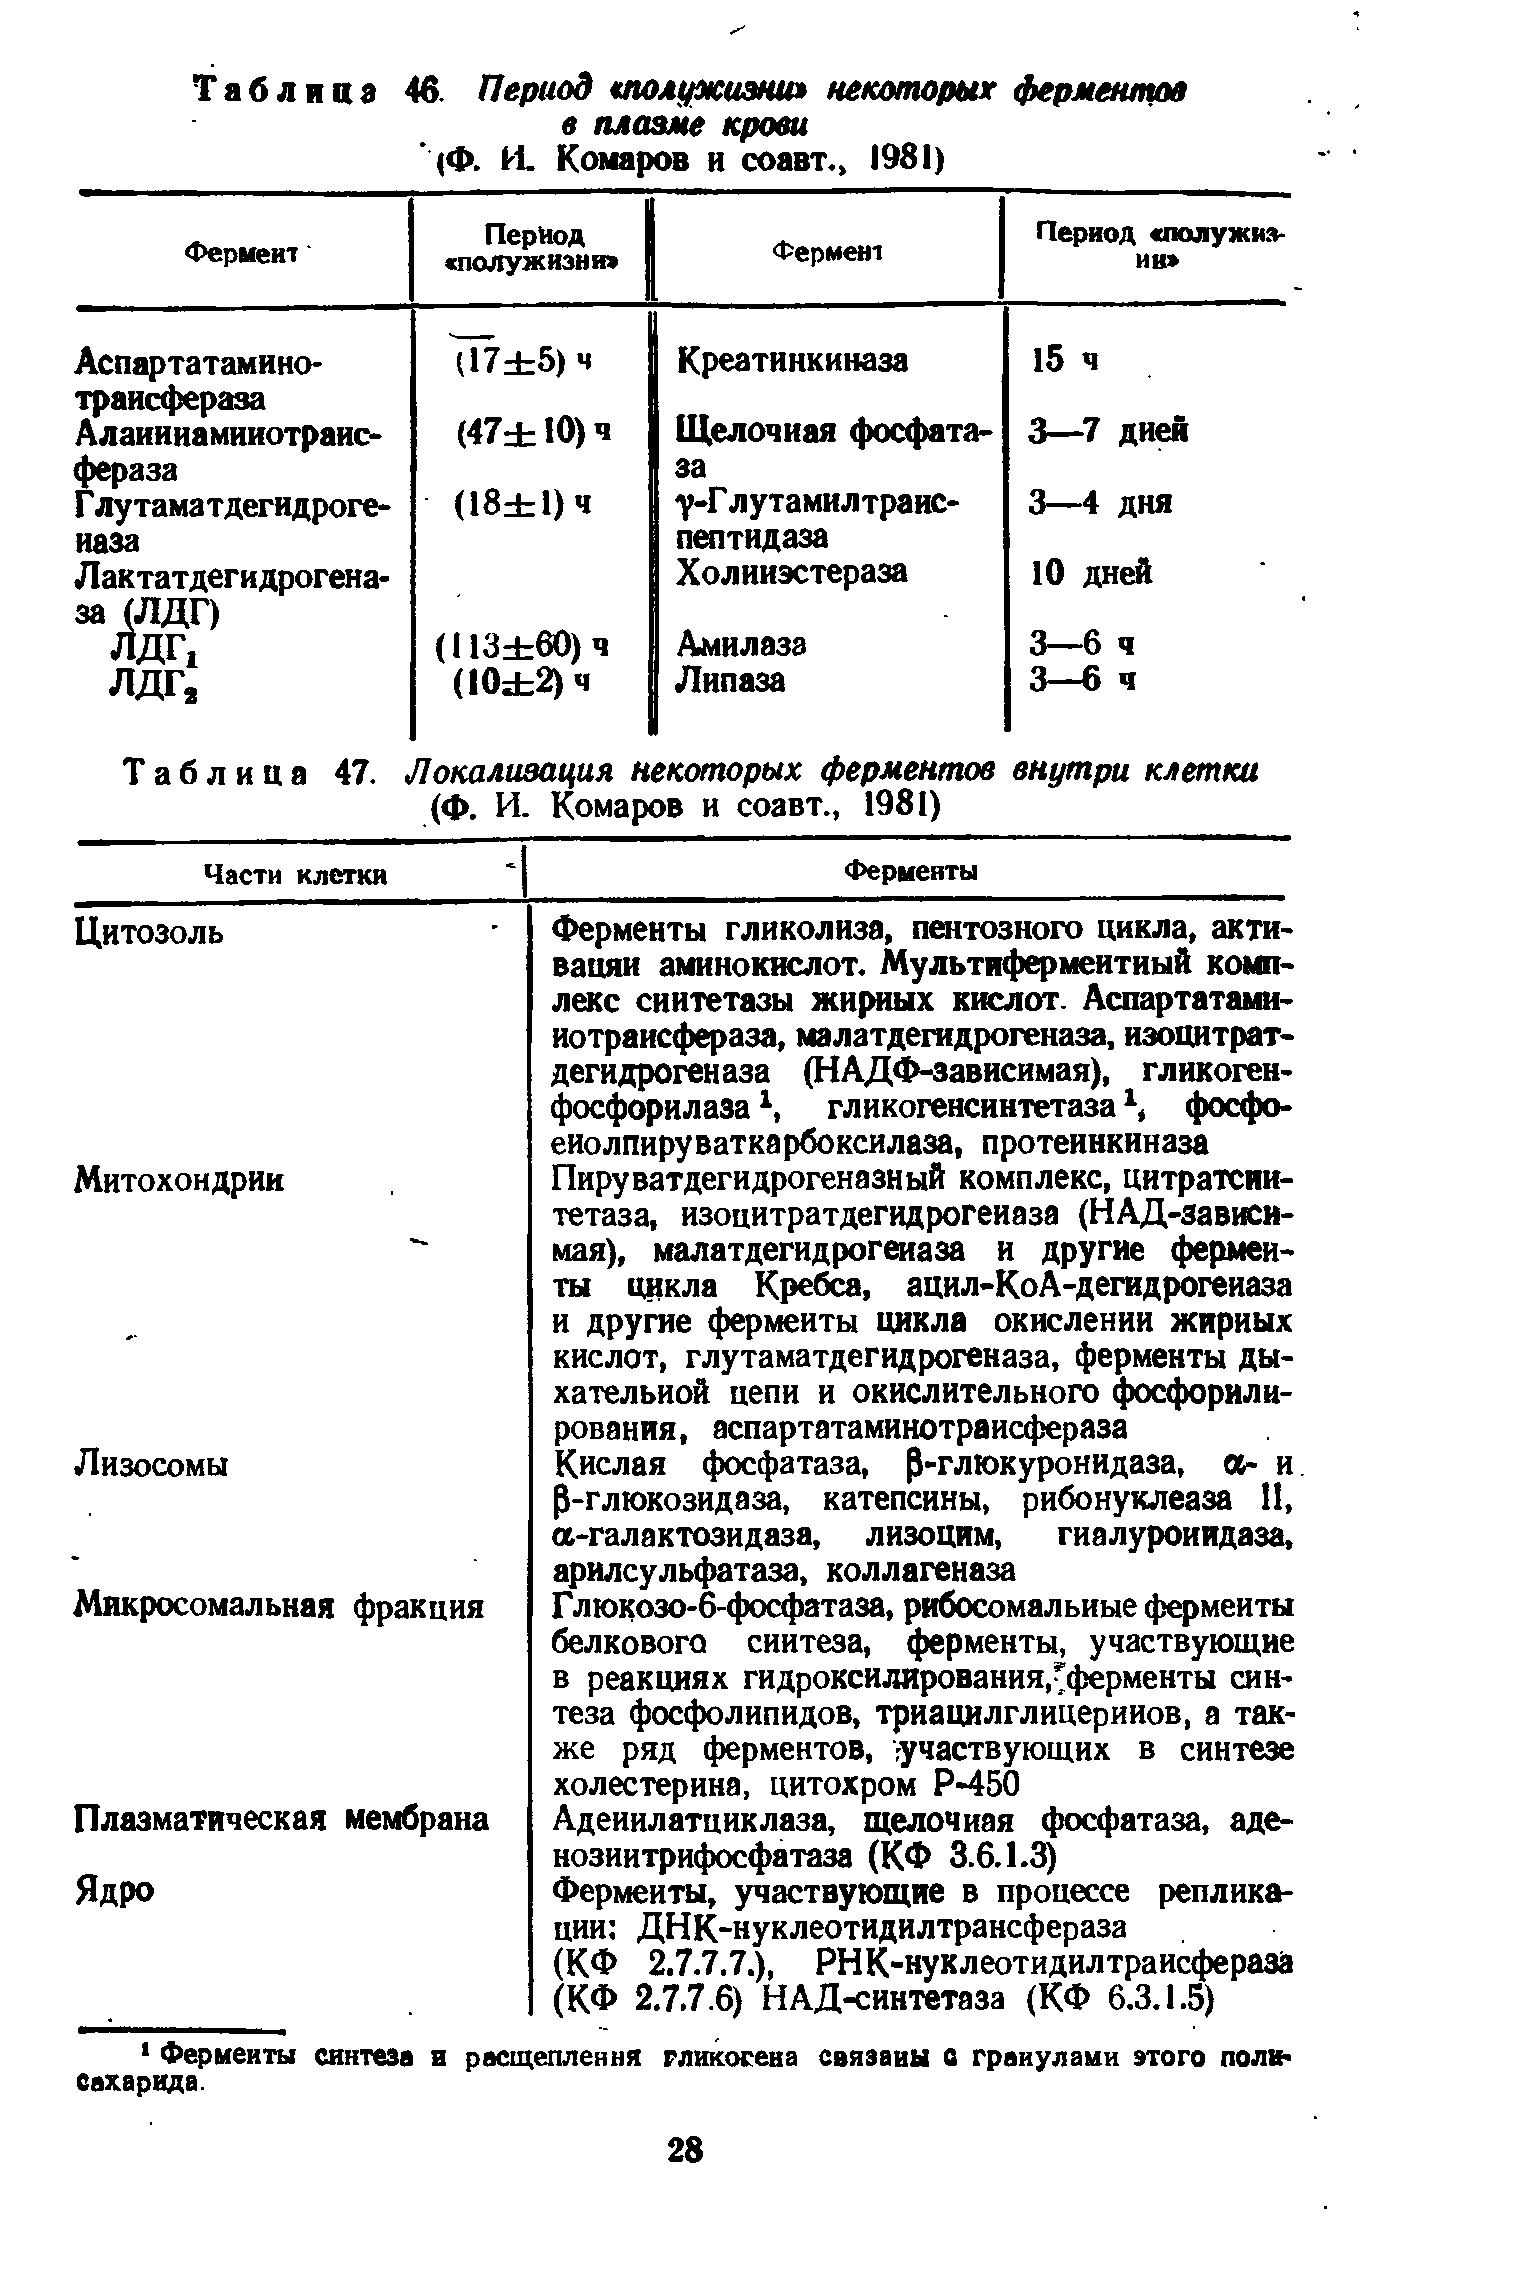 Таблица 47. Локализация некоторых ферментов внутри клетки (Ф. И. Комаров и соавт., 1981)...